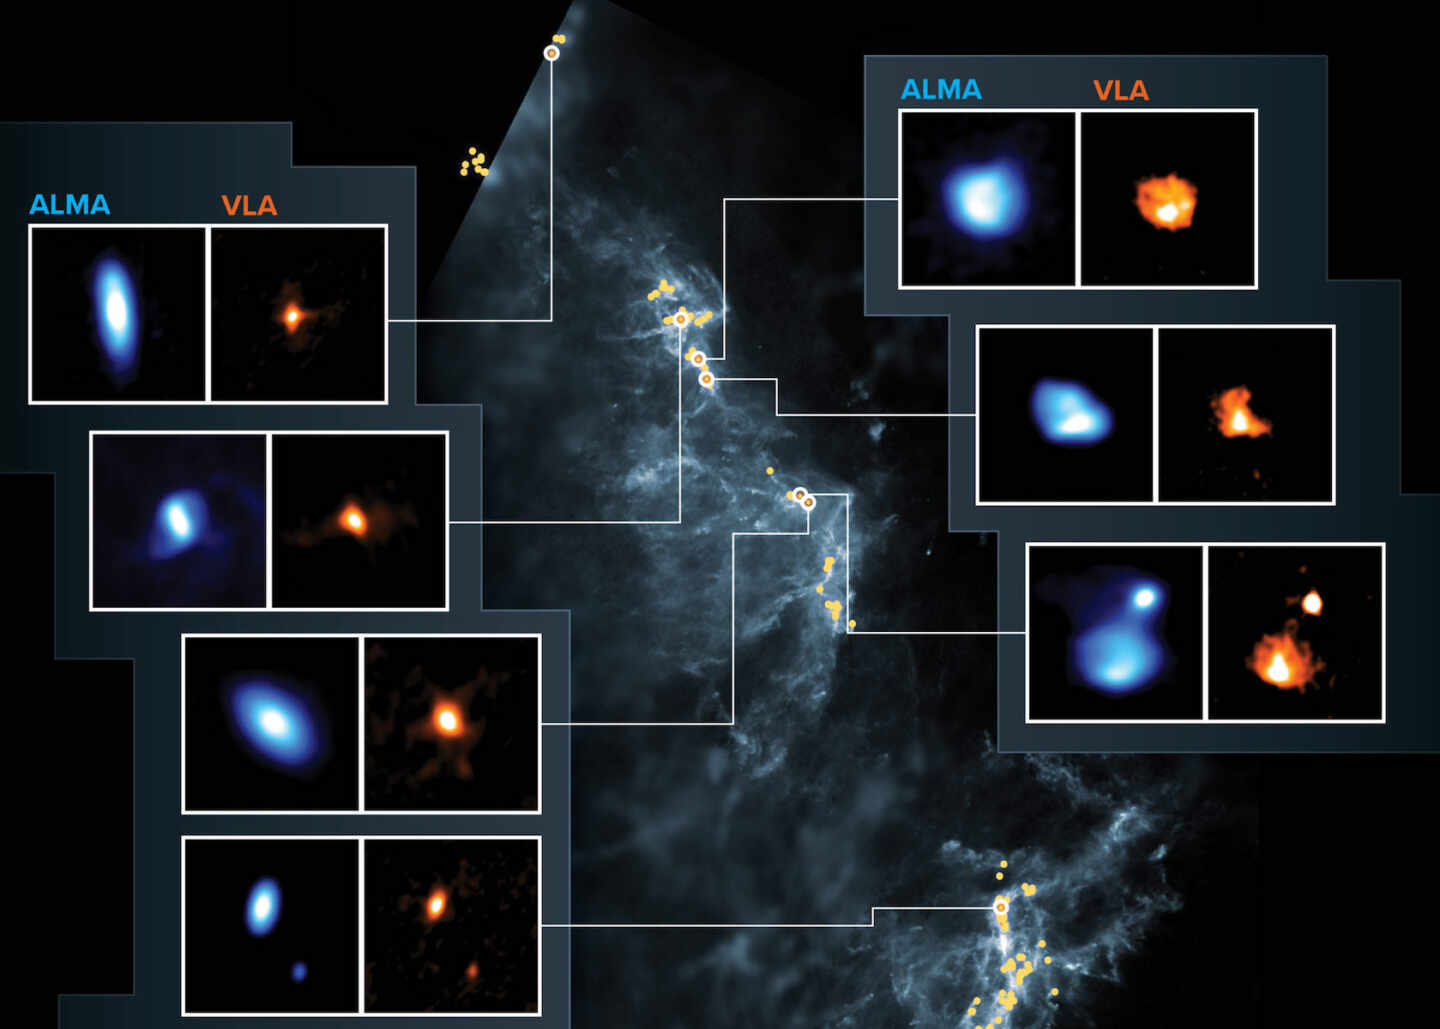 Descubren más de 300 discos protoplanetarios en las nubes de Orión